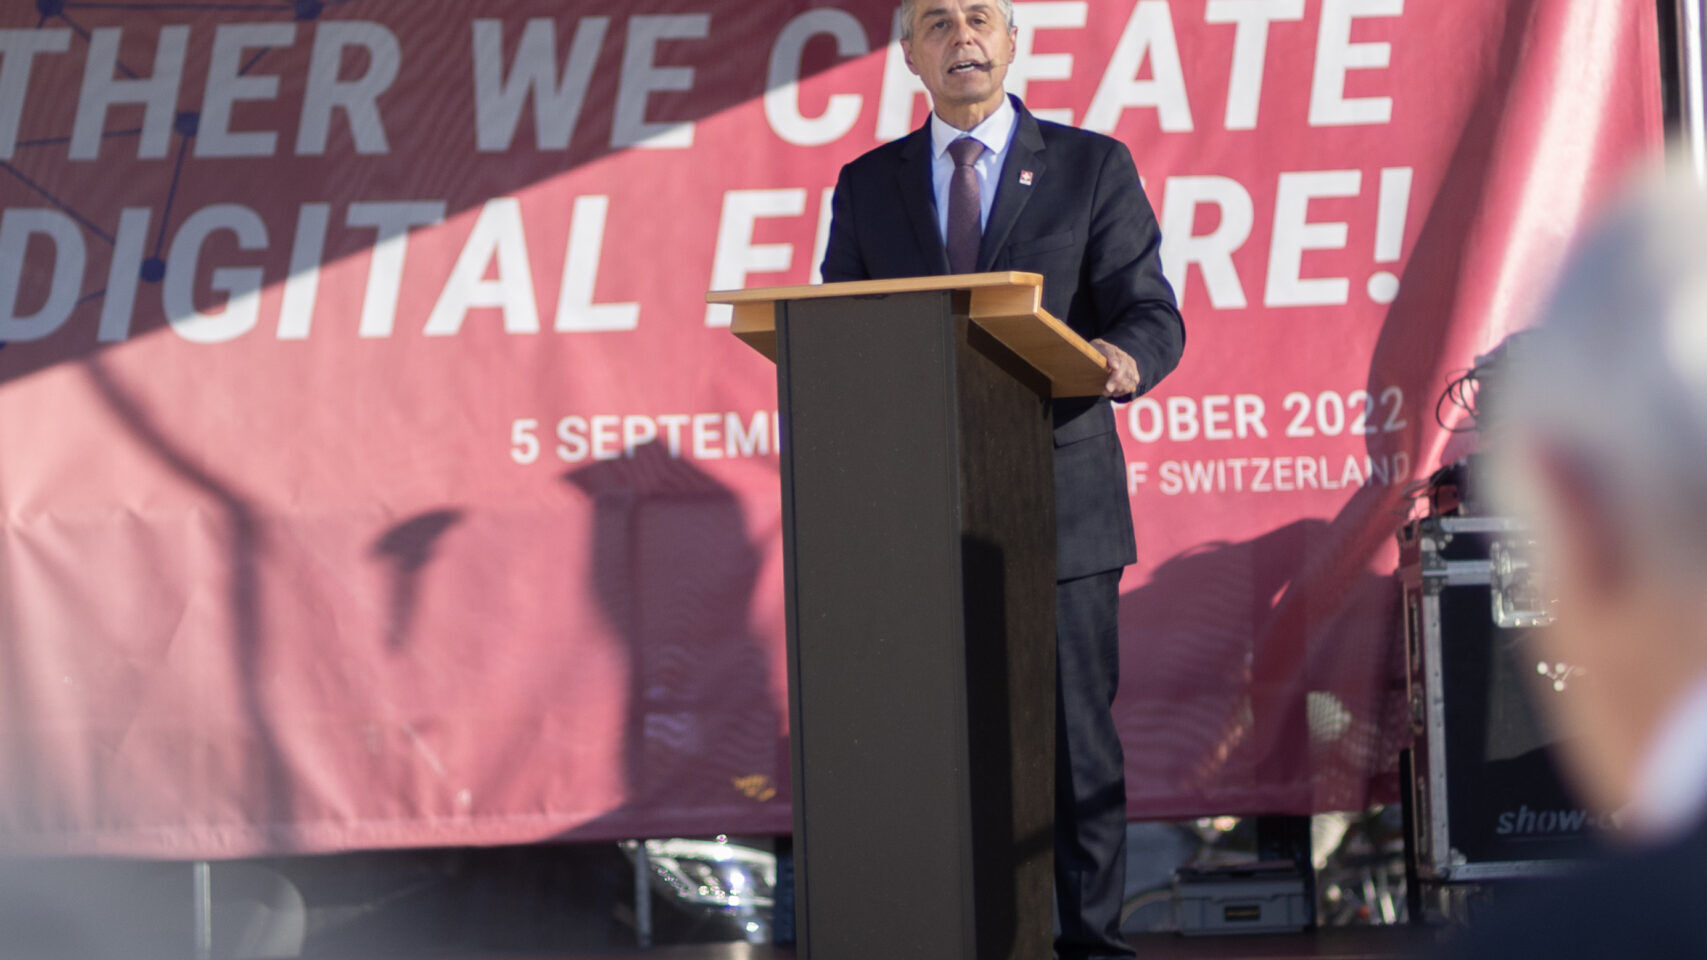 Am 2022. September wurden in Bern die «Swiss Digital Journals» 5 eingeweiht, Bundespräsident Ignazio Cassis nahm an der Veranstaltung teil und hielt eine Rede